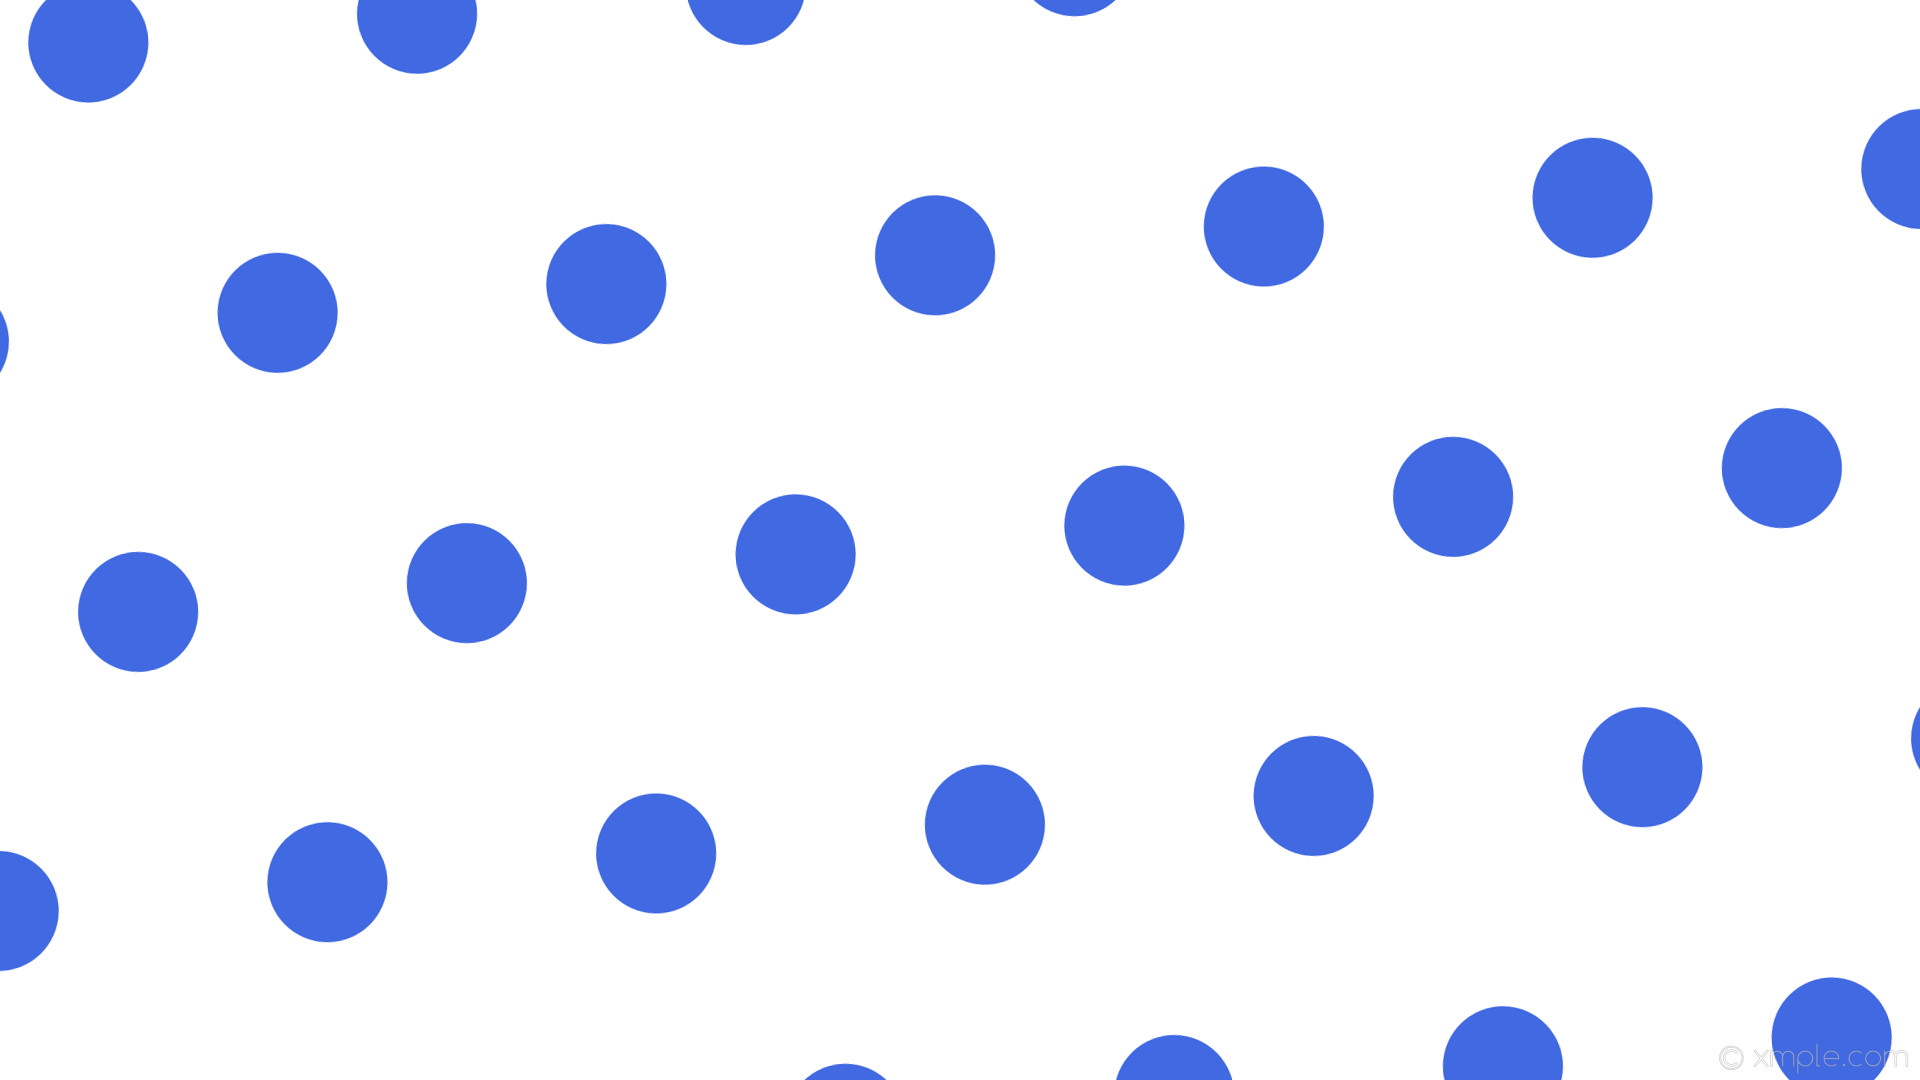 1920x1080 wallpaper white polka dots hexagon blue royal blue #ffffff #4169e1 diagonal  5Â° 120px